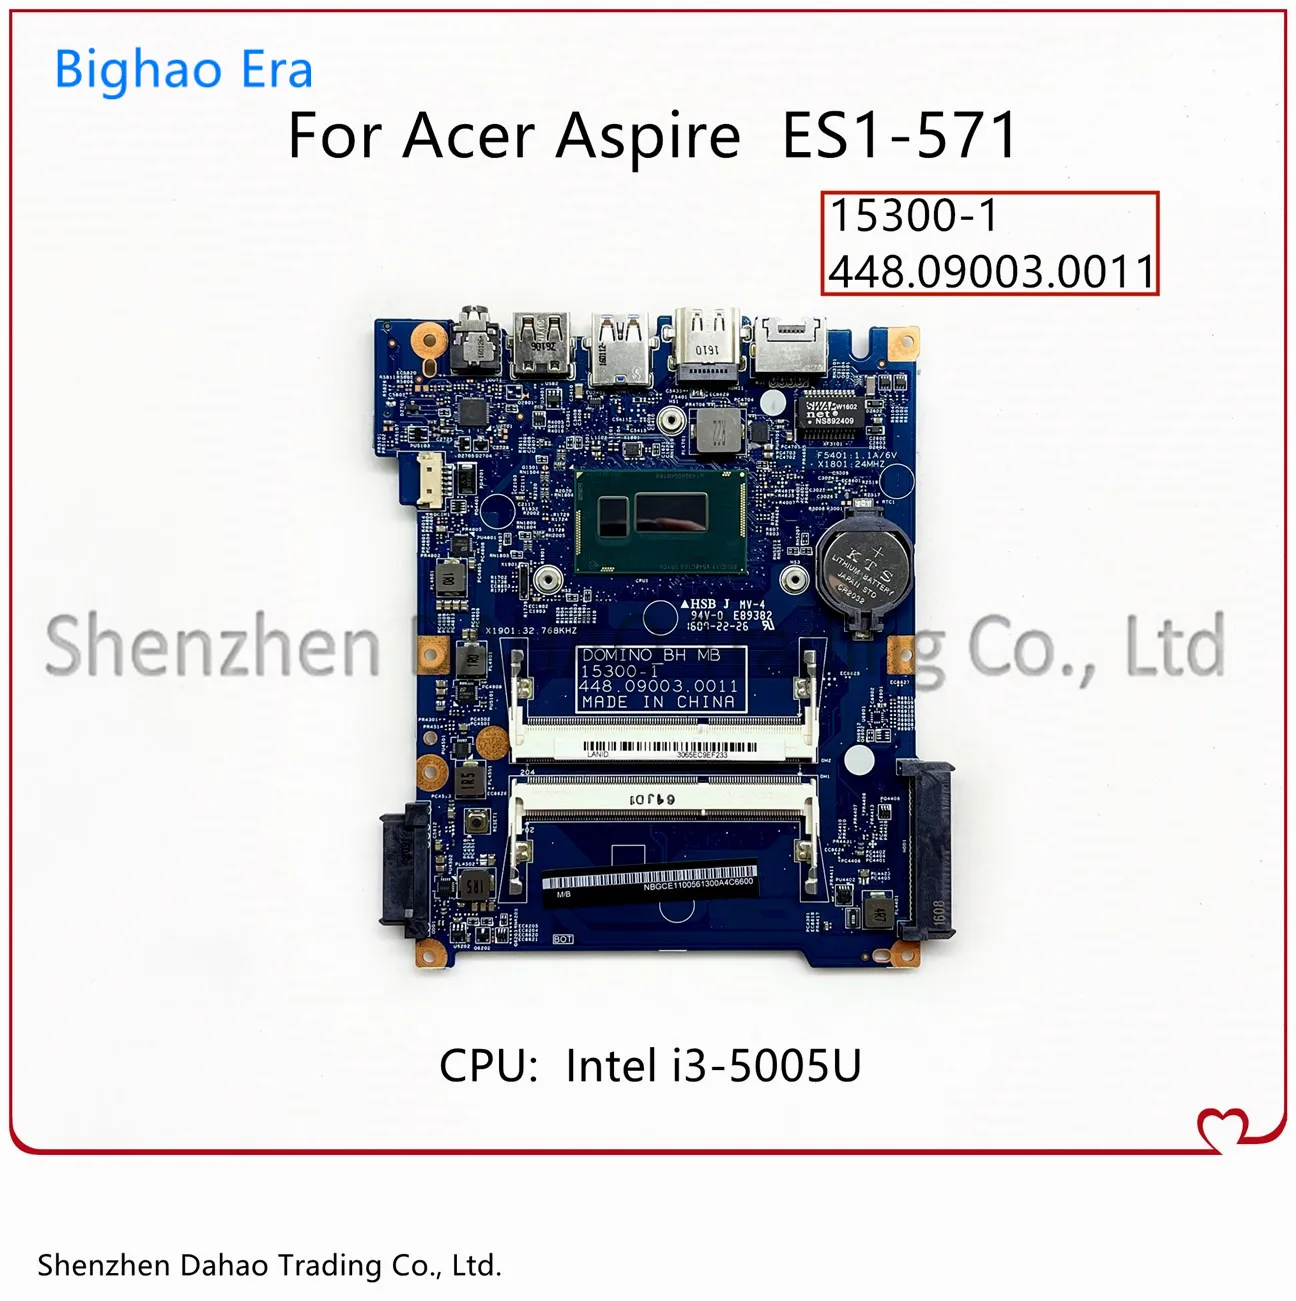 para Acer Aspire Es1571 Computador Portátil Motherboaed com I3-5005u Cpu 448.09003.0011 153001 Mainboard Nb. Gce11.008 Nbgce11008 100% Trabalho